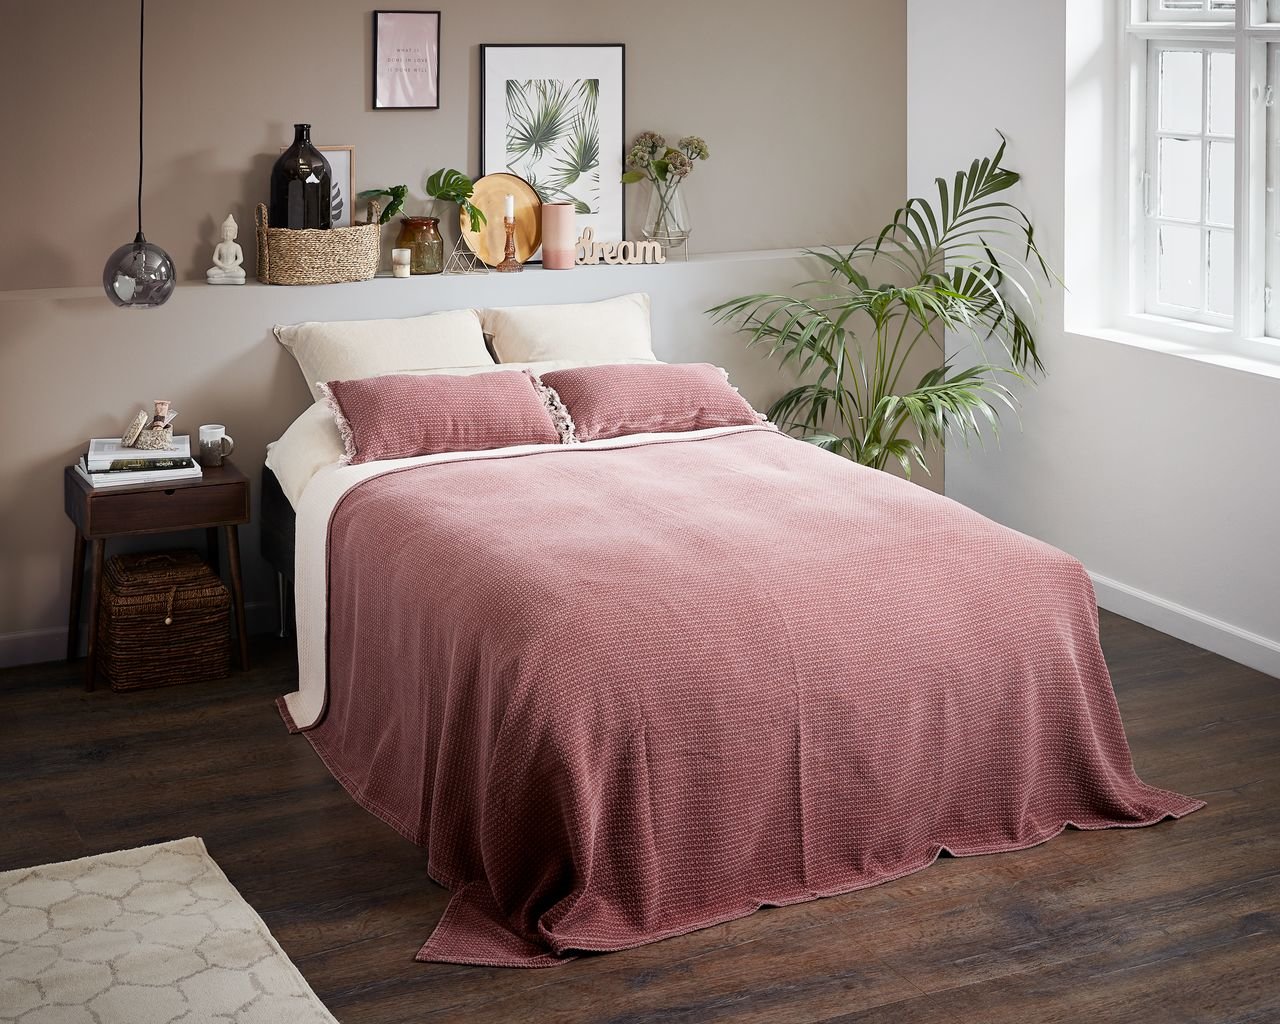 Gam màu sáng, màu pastel là lựa chọn phù hợp để trang trí phòng ngủ nhỏ cho nữ